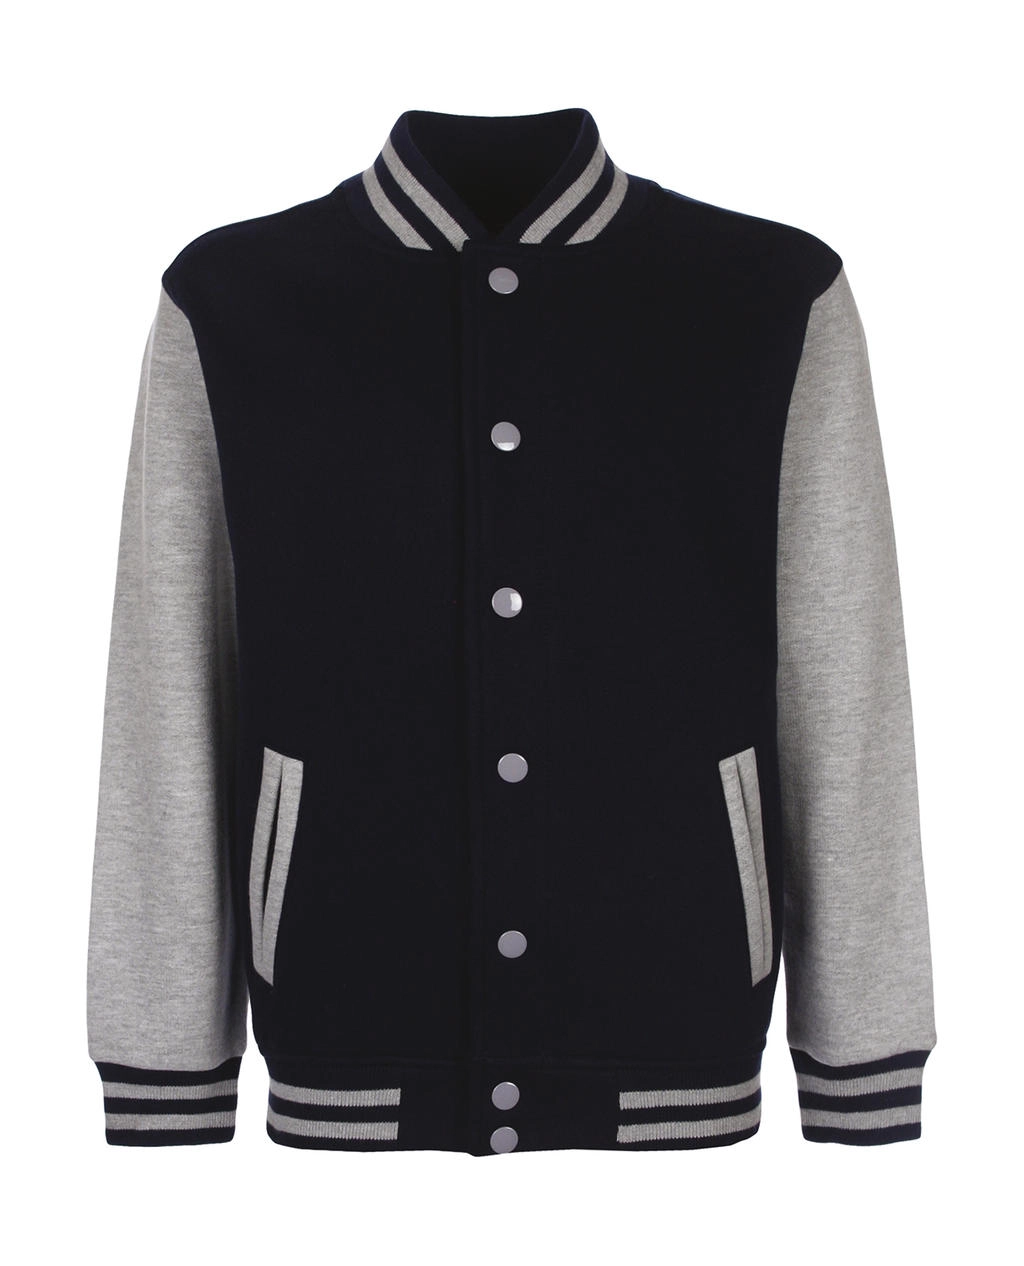 Junior Varsity Jacket zum Besticken und Bedrucken in der Farbe Navy/Sport Grey mit Ihren Logo, Schriftzug oder Motiv.